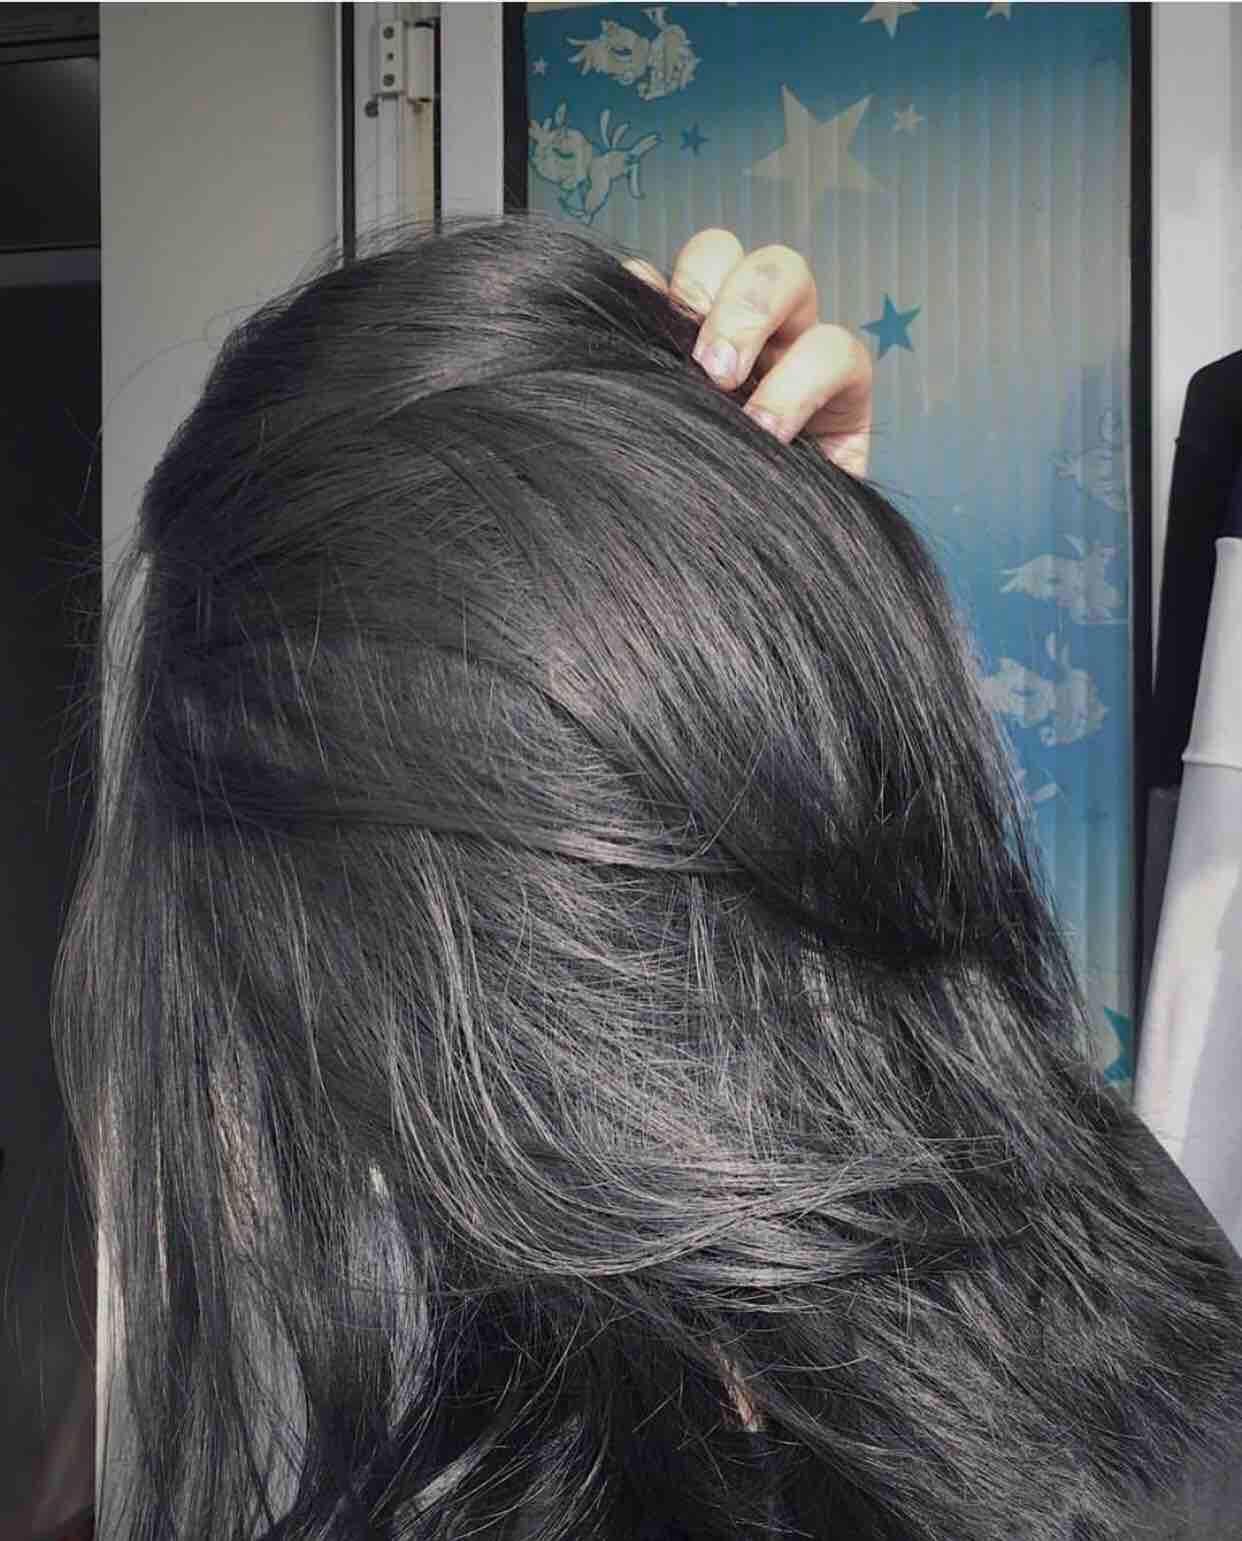 Thuốc nhuộm tóc đen: Làm mới vẻ ngoài của bạn với thuốc nhuộm tóc đen chất lượng cao, tăng cường bóng đen cho mái tóc mượt mà và đầy sức sống. Hãy thử ngay để tận hưởng cảm giác tự tin và quyến rũ với mái tóc đen sâu bất cứ lúc nào.